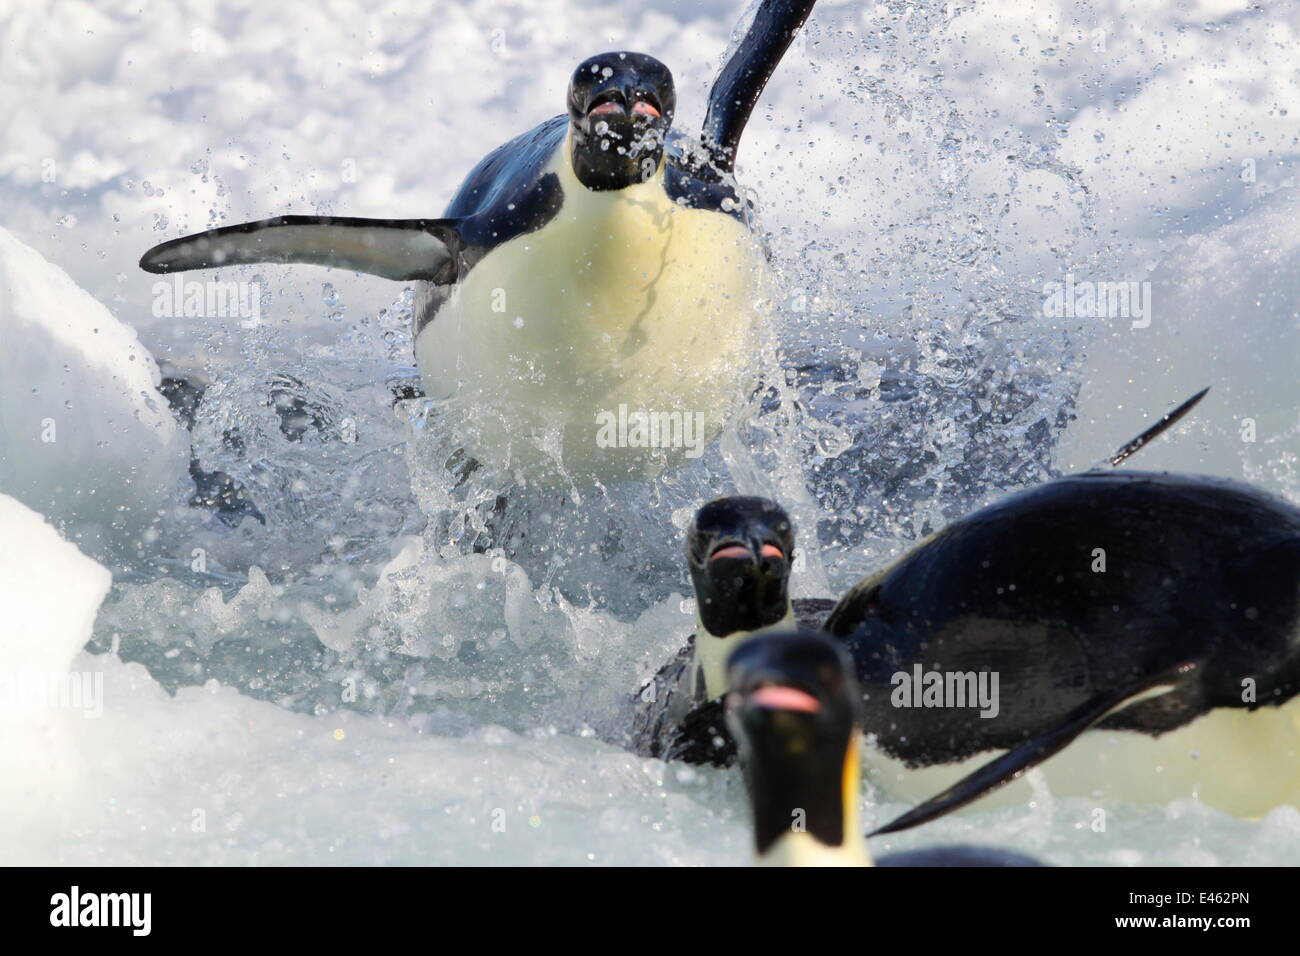 Manchots empereurs (Aptenodytes forsteri) exploser hors de l'eau, de retourner à se reproduire au Cap Washington, l'Antarctique. Pris sur place pour BBC, 2009 série planète gelée Banque D'Images